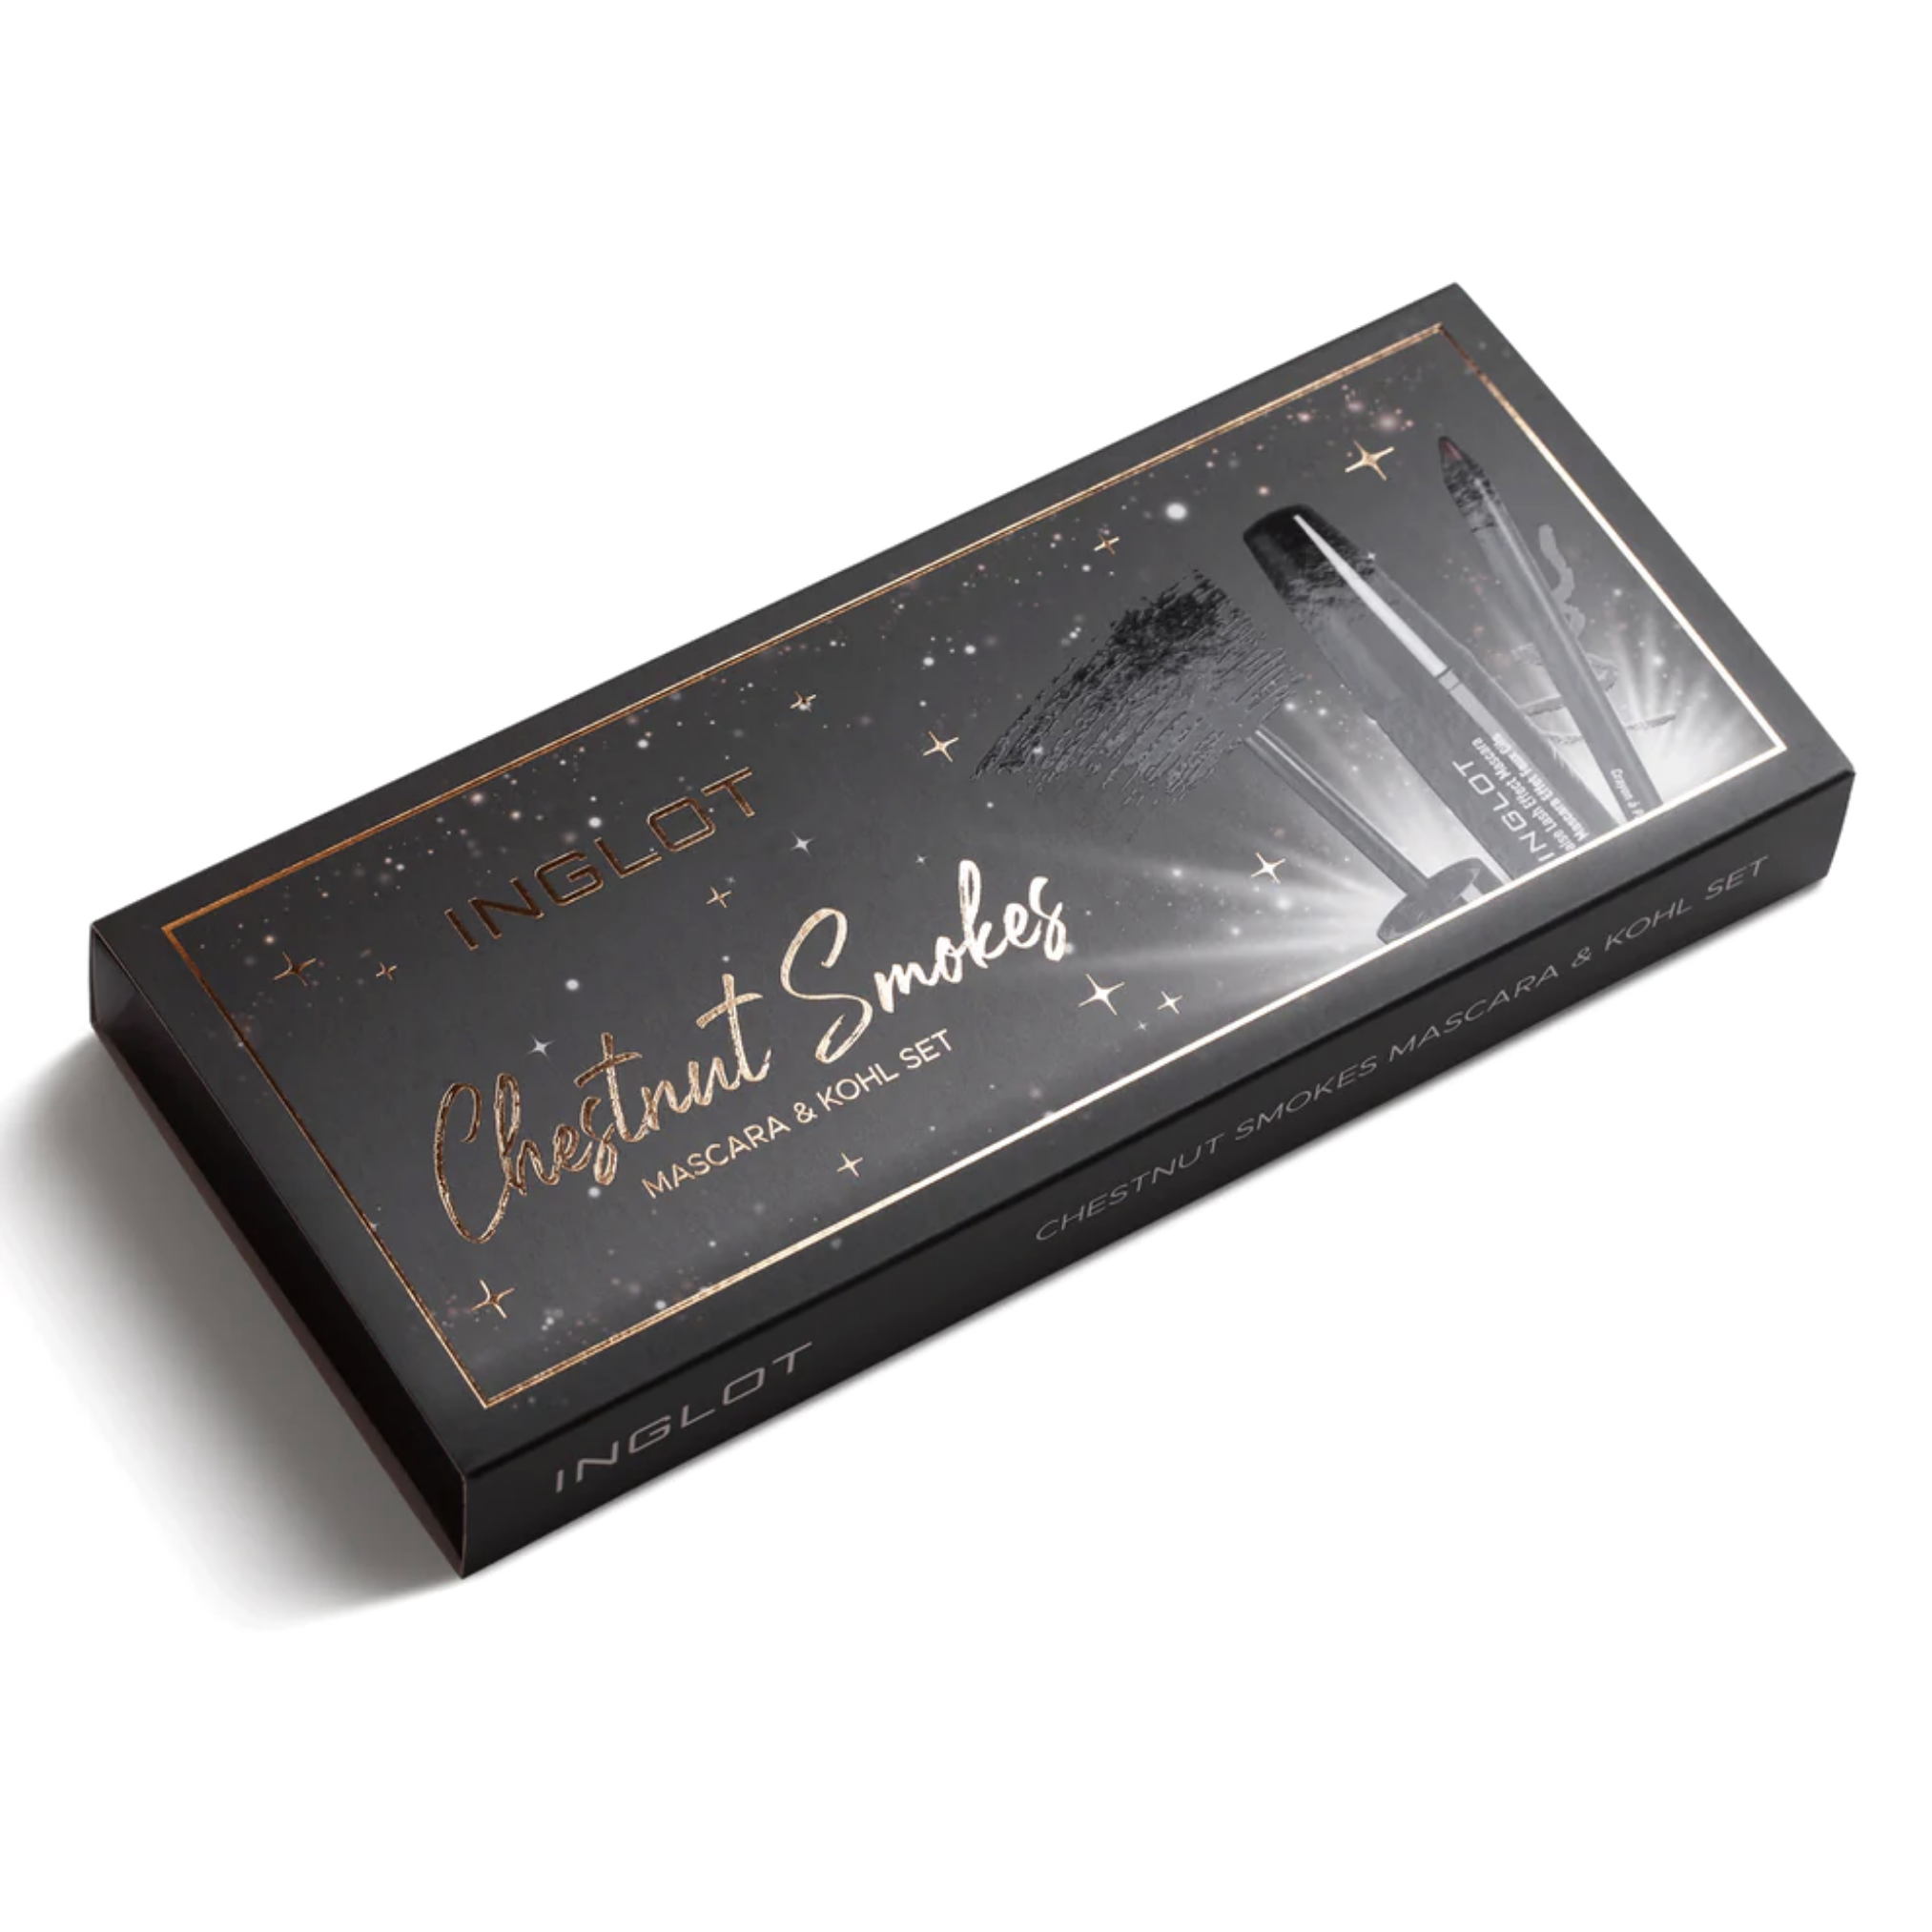 Inglot Chestnut Smokes Mascara & Kohl Set, packaging